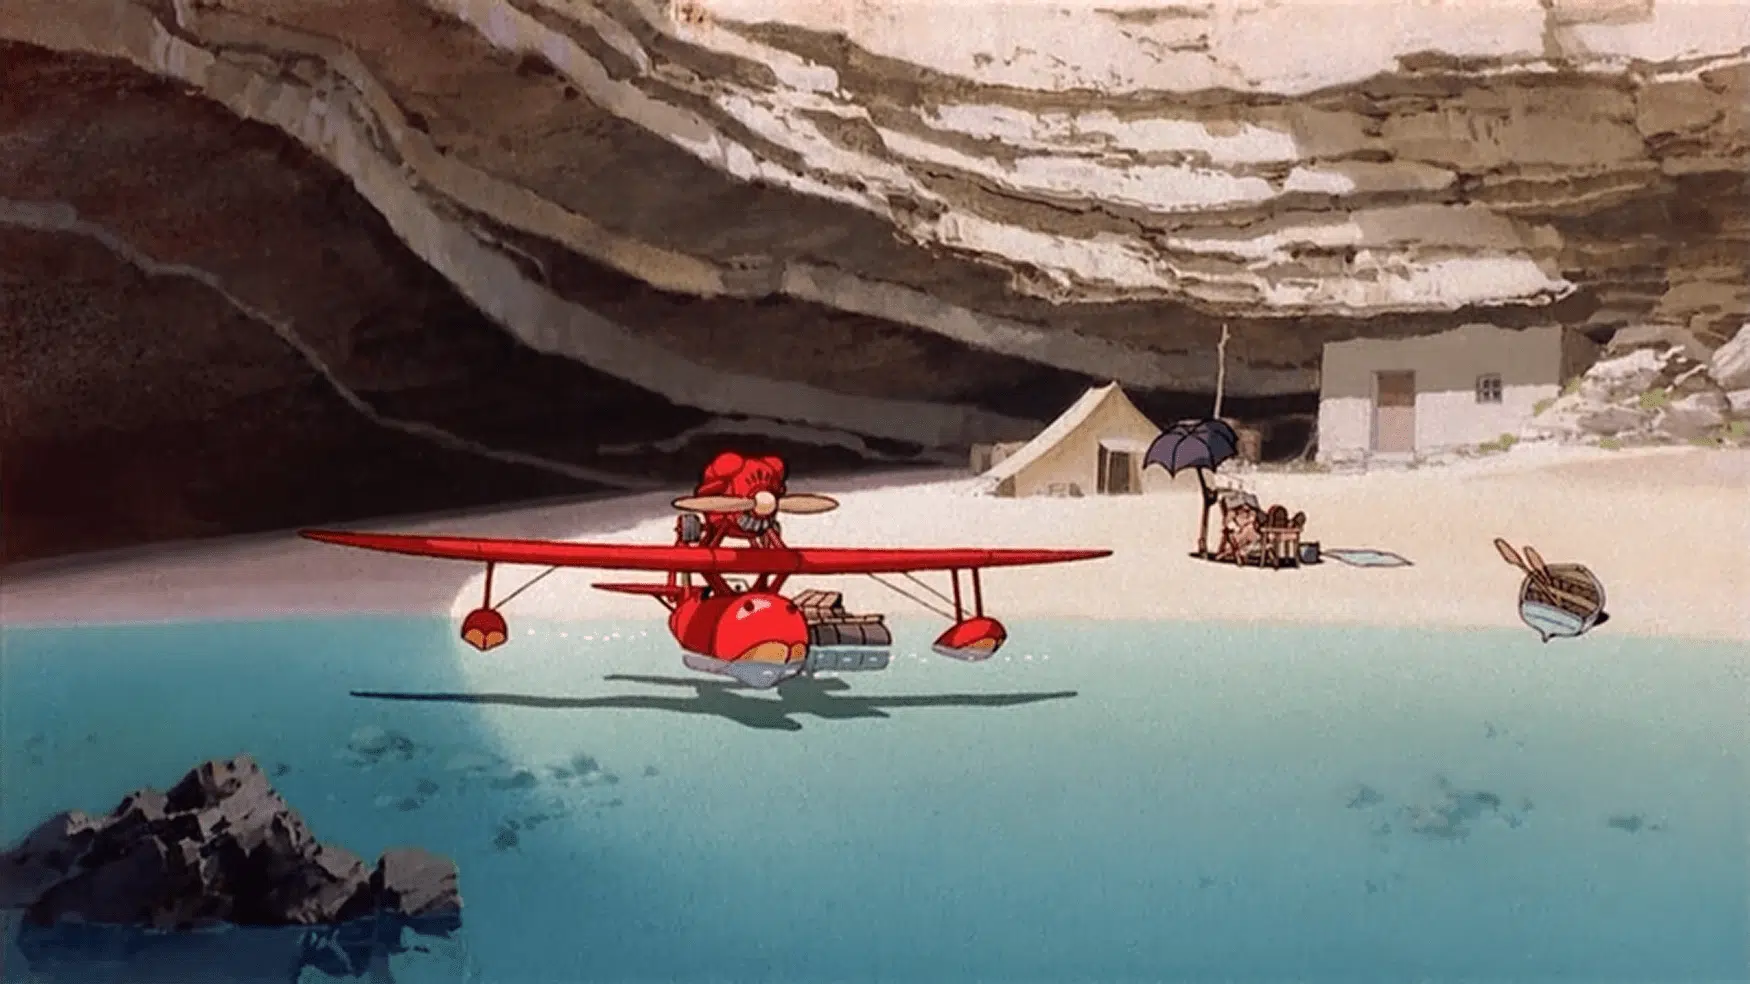 Escena Porco Rosso en la playa,película de animación de Studio Ghibli. Paisajes de estilo manga.